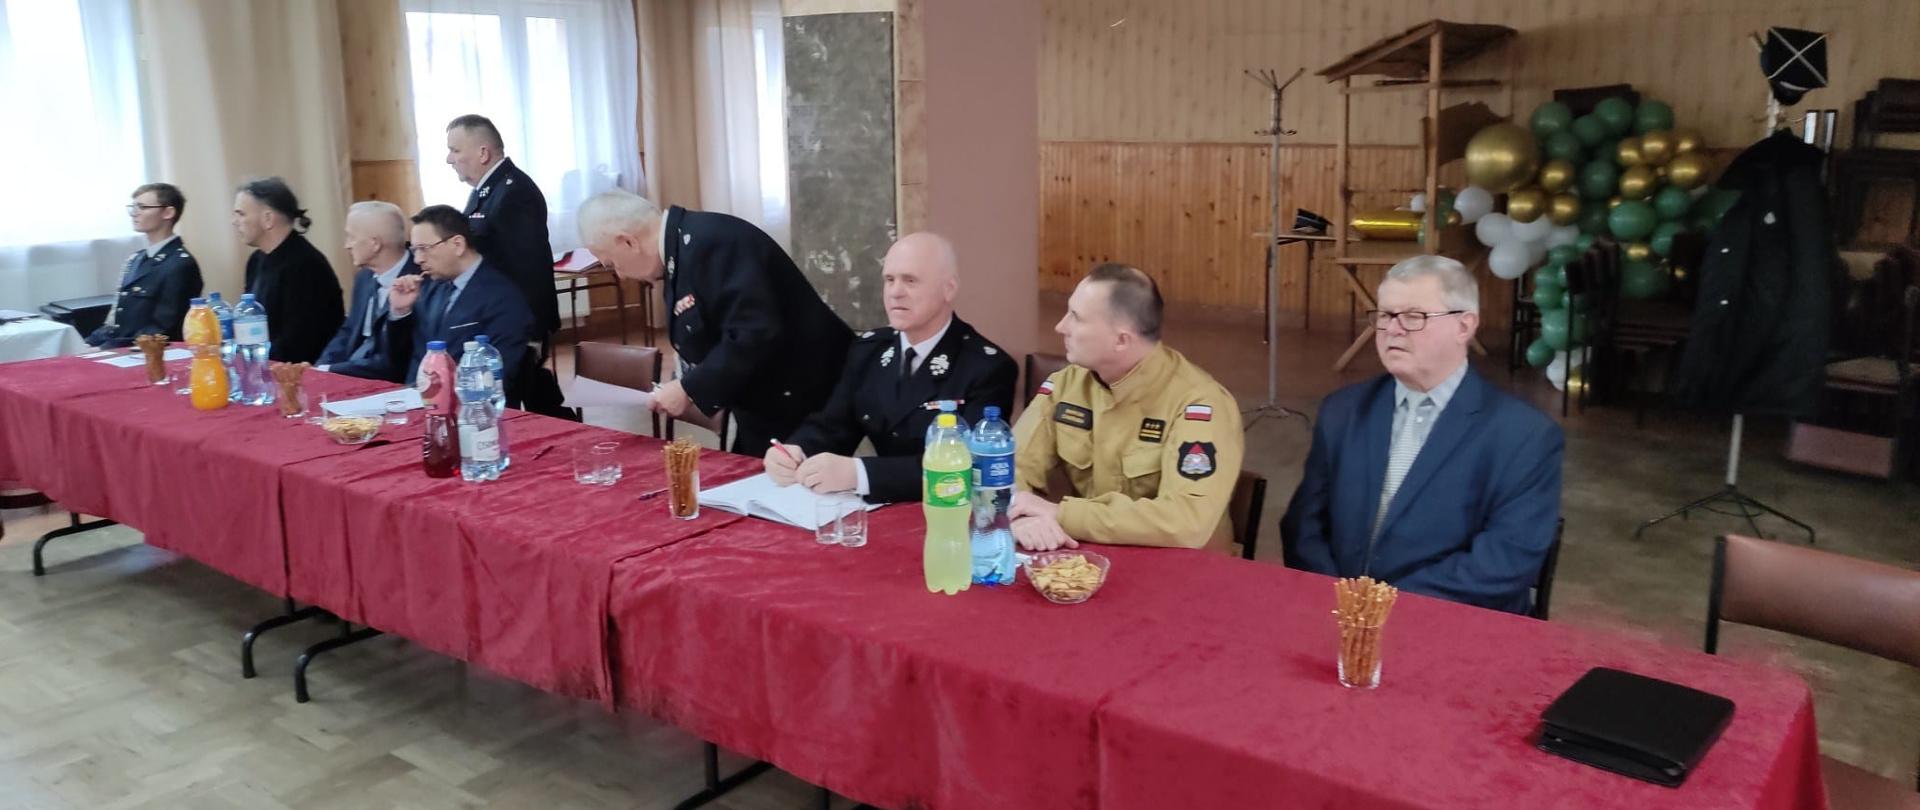 Zdjęcie przedstawia gości i organizatorów spotkania sprawozdawczego Ochotniczej Straży Pożarnej w Morawicy.